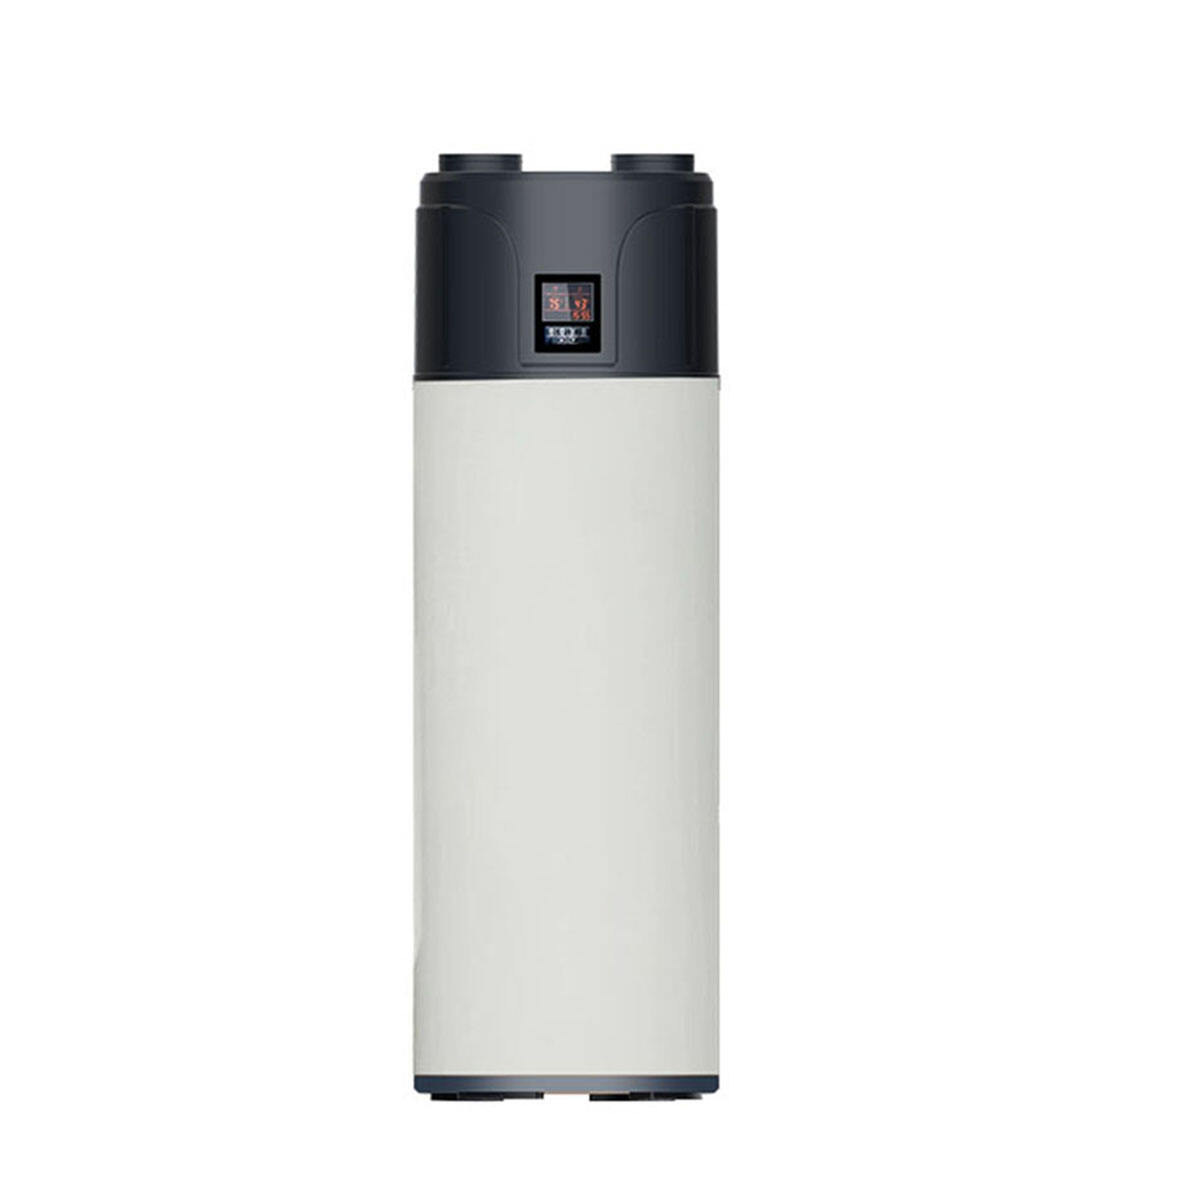 Boiler Air to Water Heaters Domestic Pump များ ထုတ်လုပ်ခြင်း။